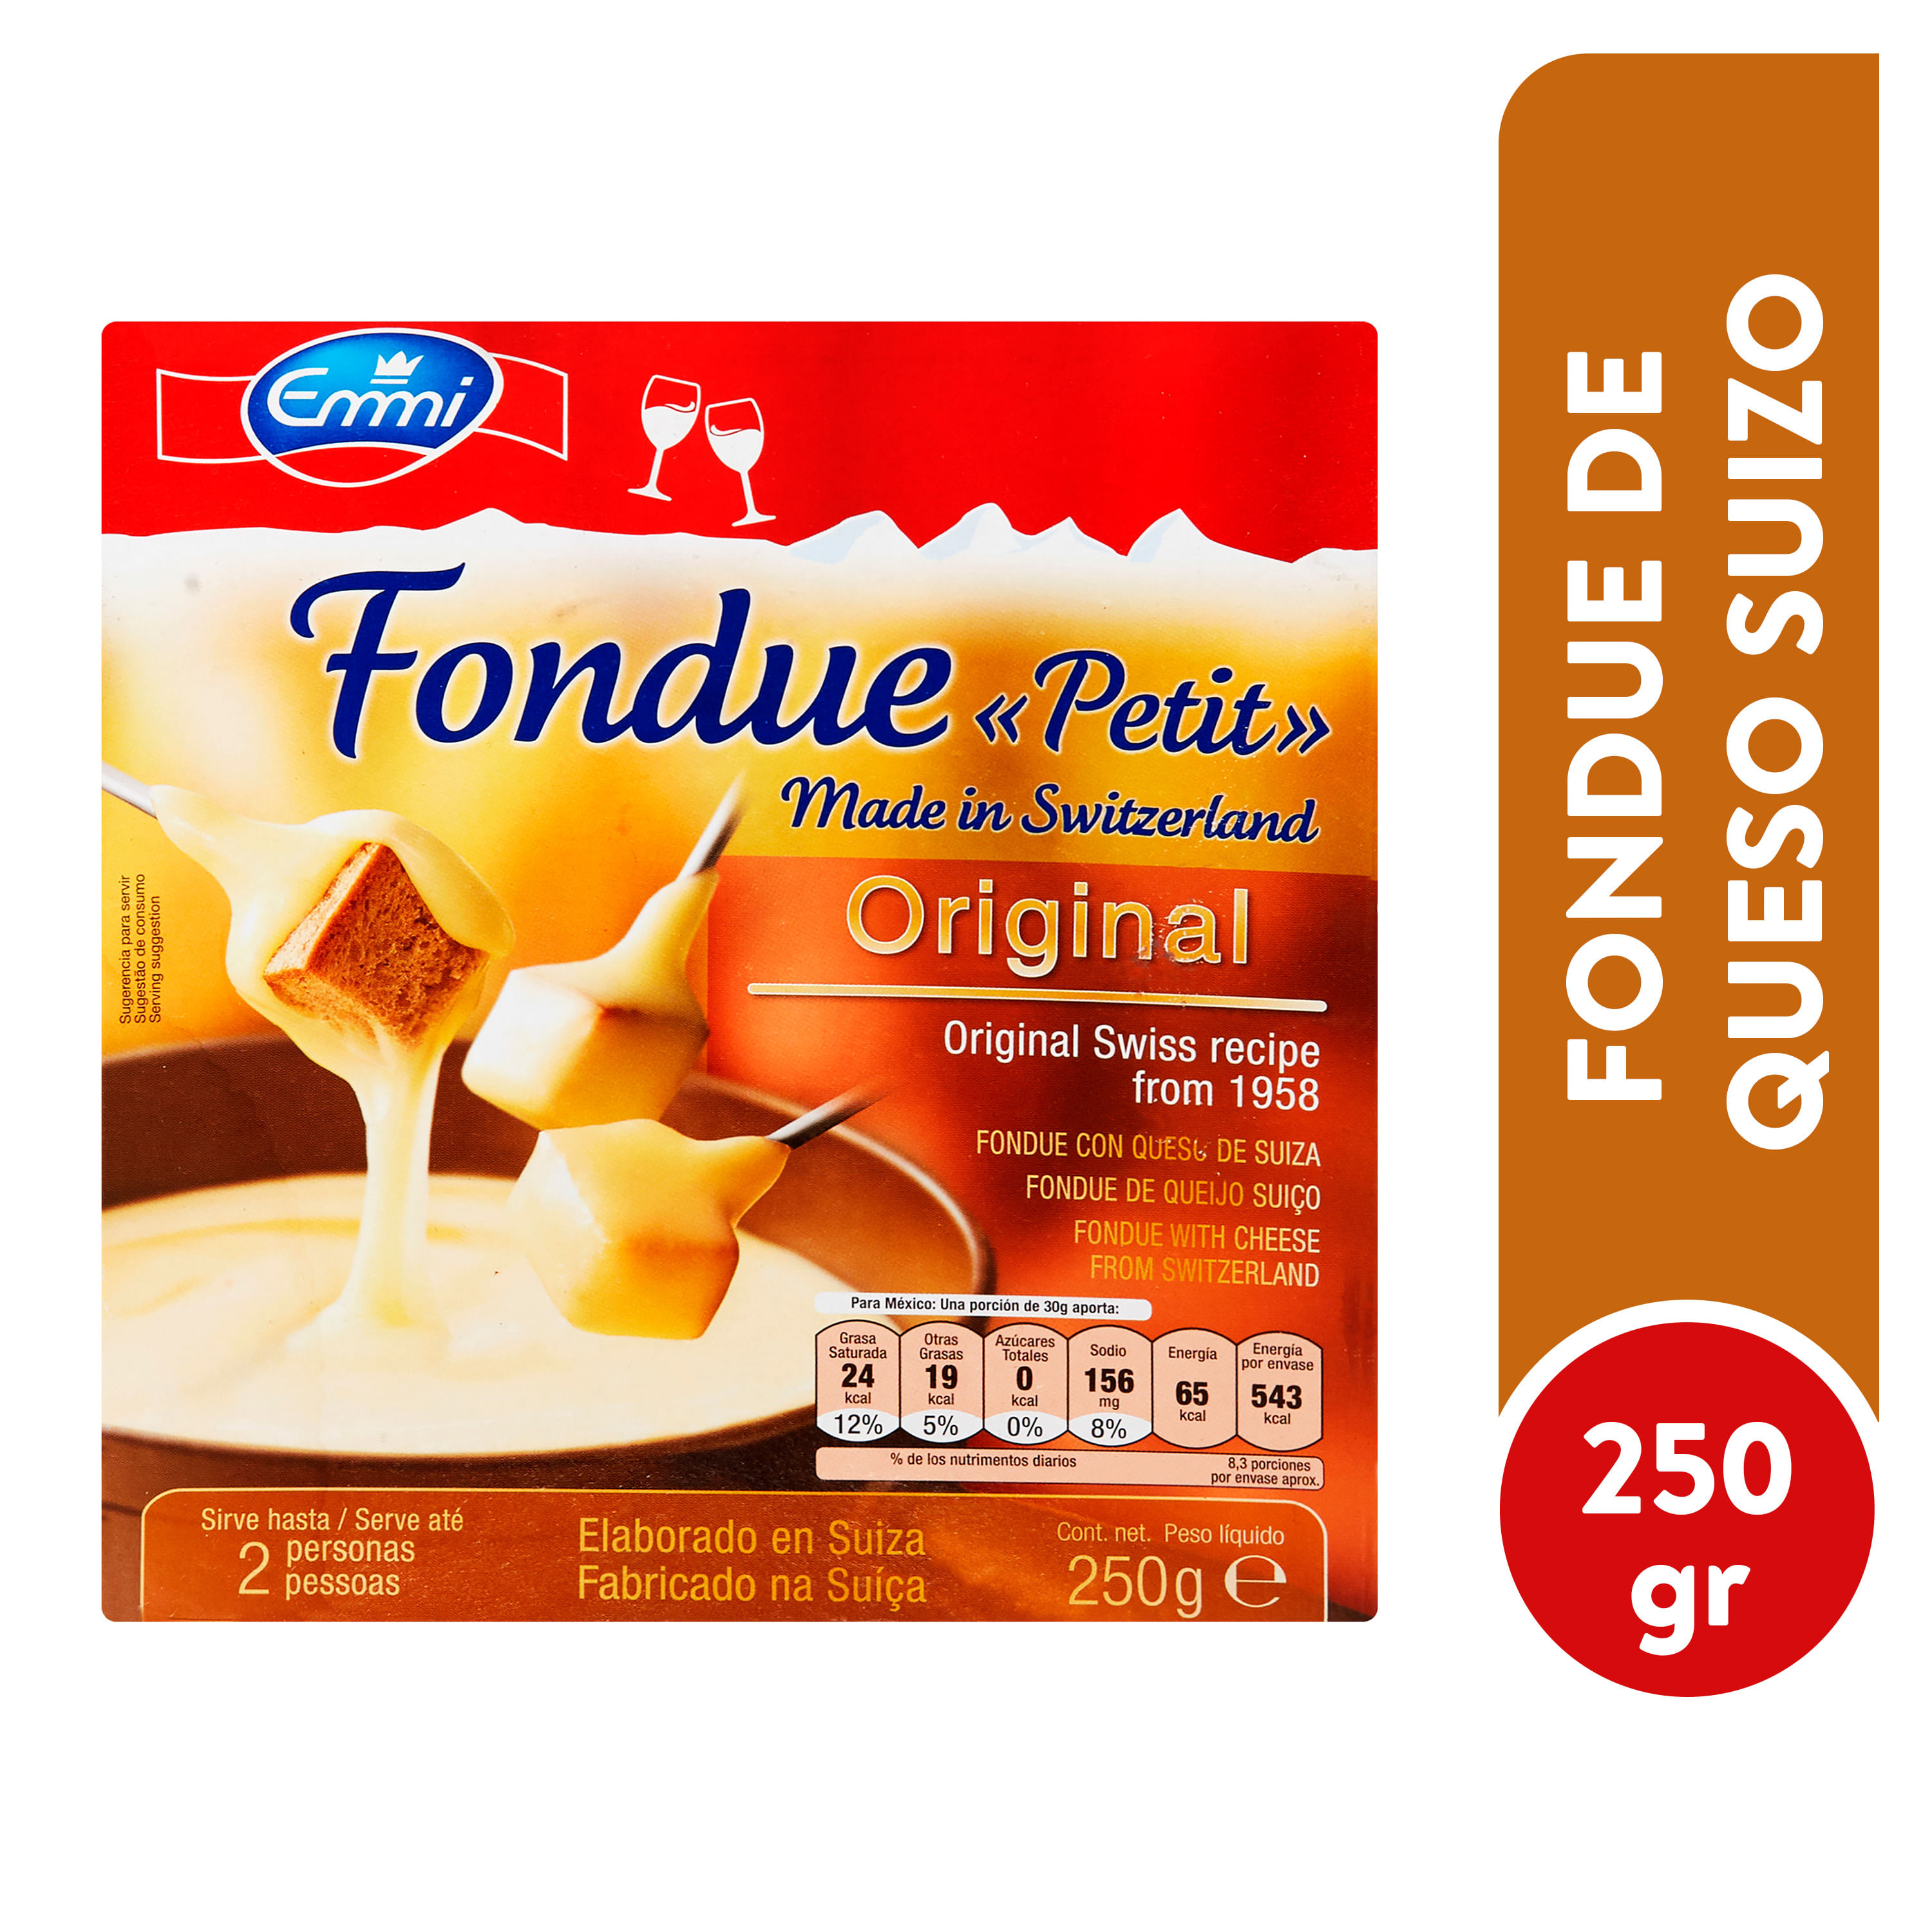 Juego de queso suizo de fondue en caja de regalo, incluye nuestra receta de  fondue de chefs, doblando los distintos sabores de tres quesos clásicos de